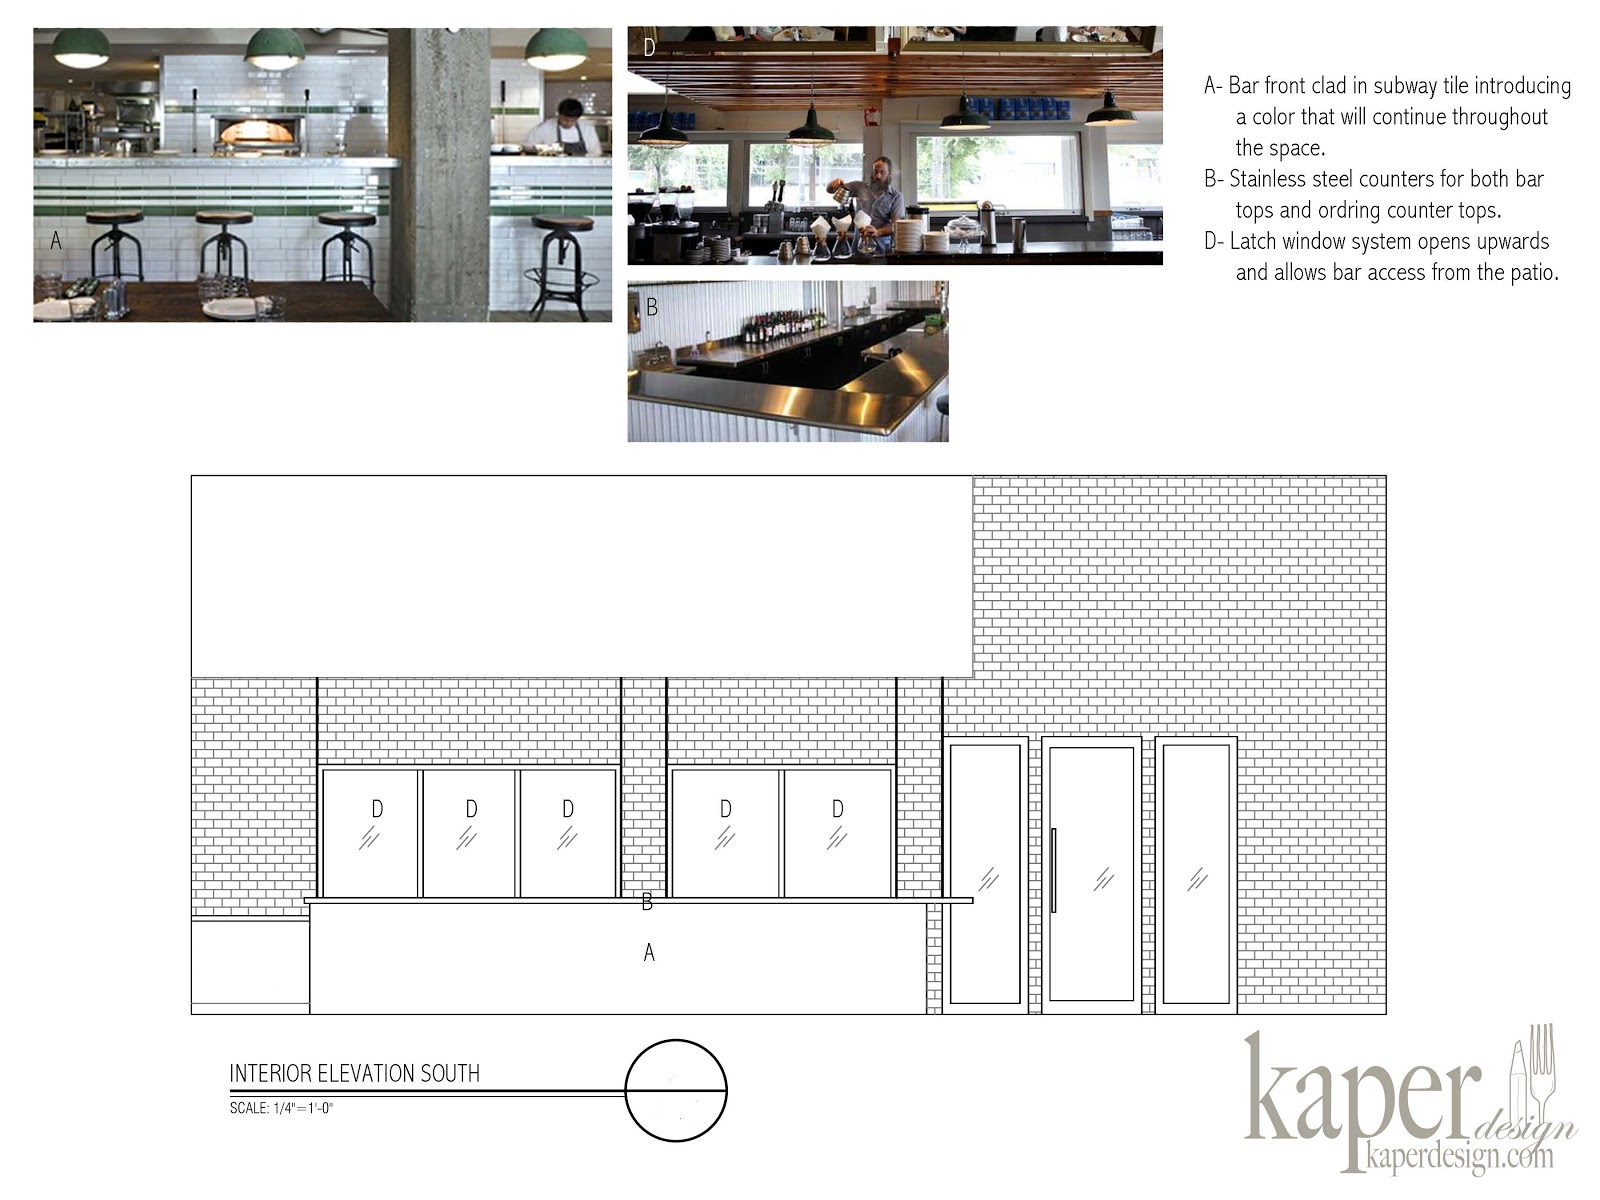 Kaper Design; Restaurant & Hospitality Design Inspiration